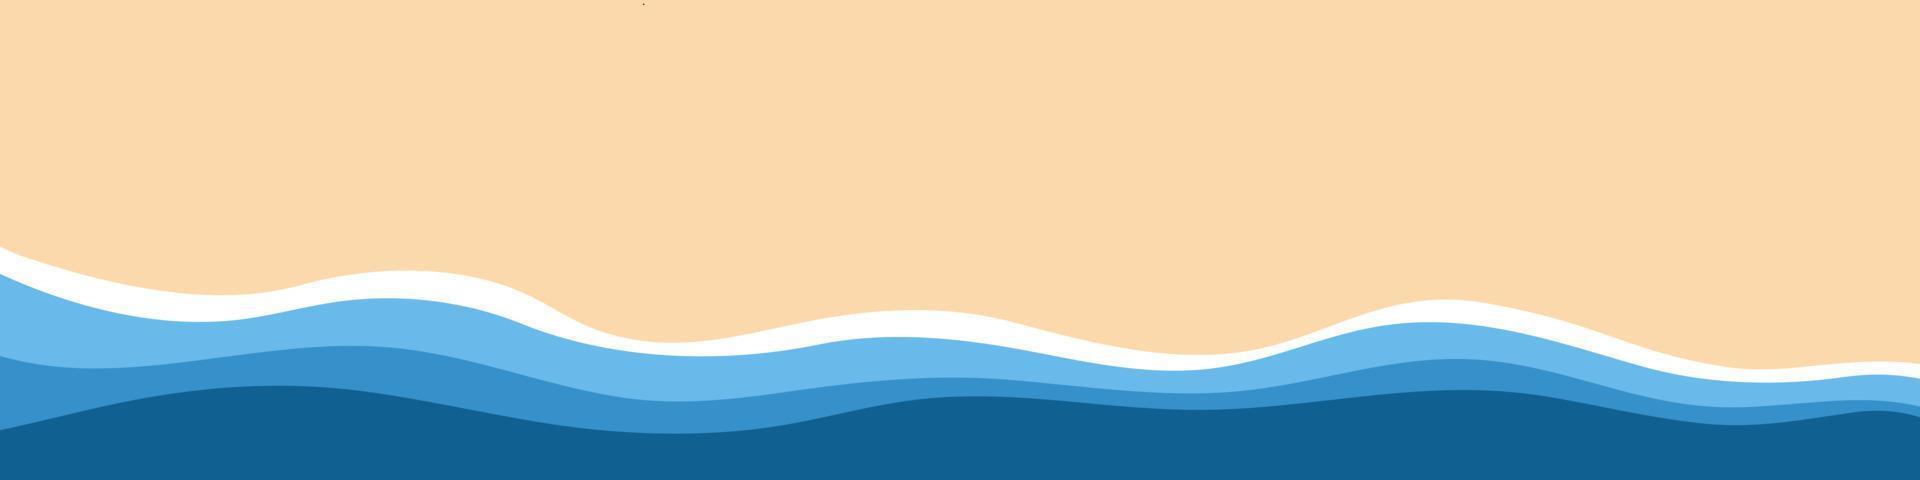 abstracte achtergrond van blauwe zee en zomerstrand voor spandoek, uitnodiging, poster of websiteontwerp. vector